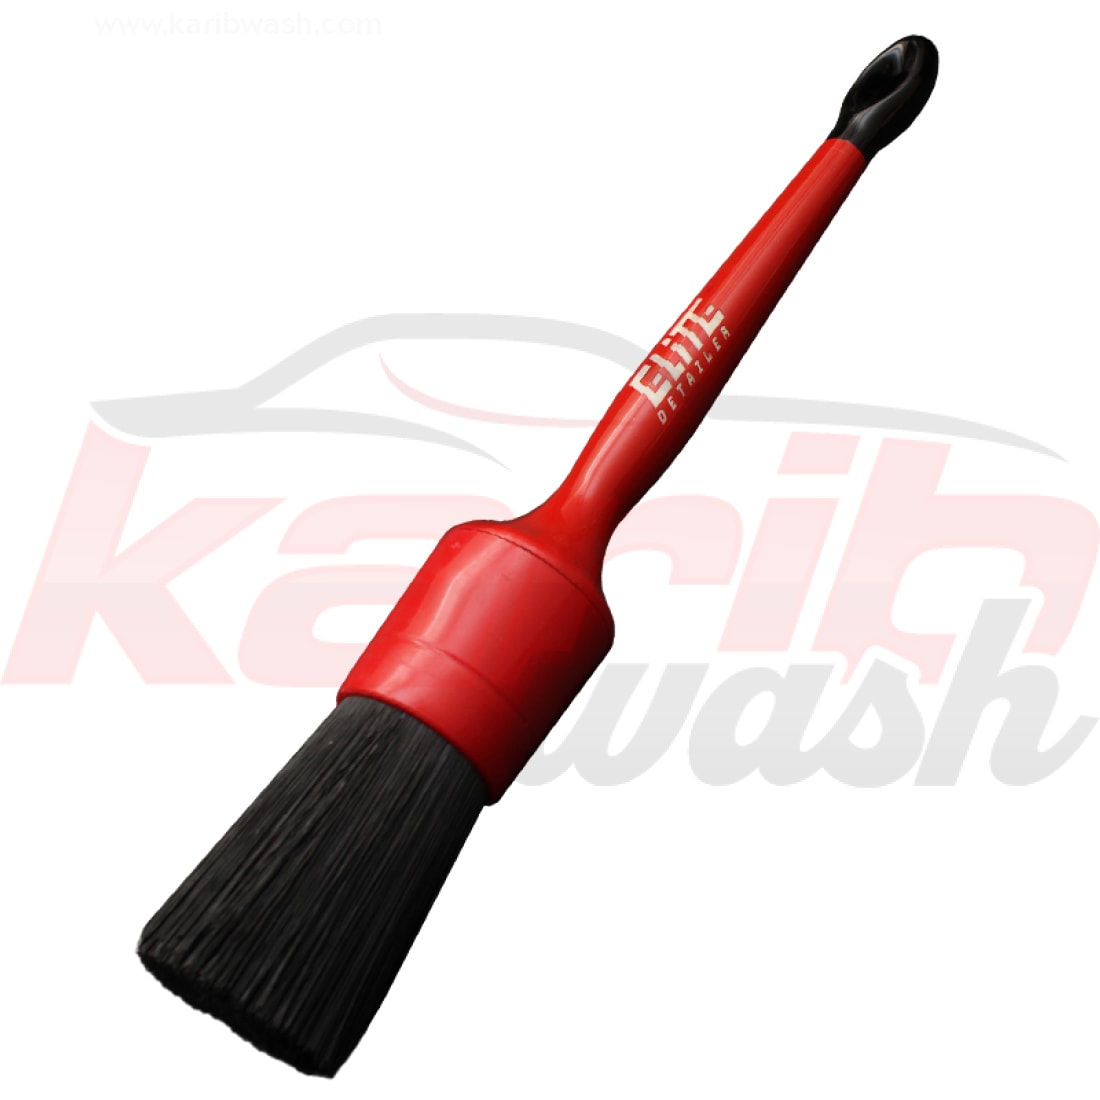 Hard Detailing Brush 12 - 30mm - ELITE DETAILER - KARIBWASH